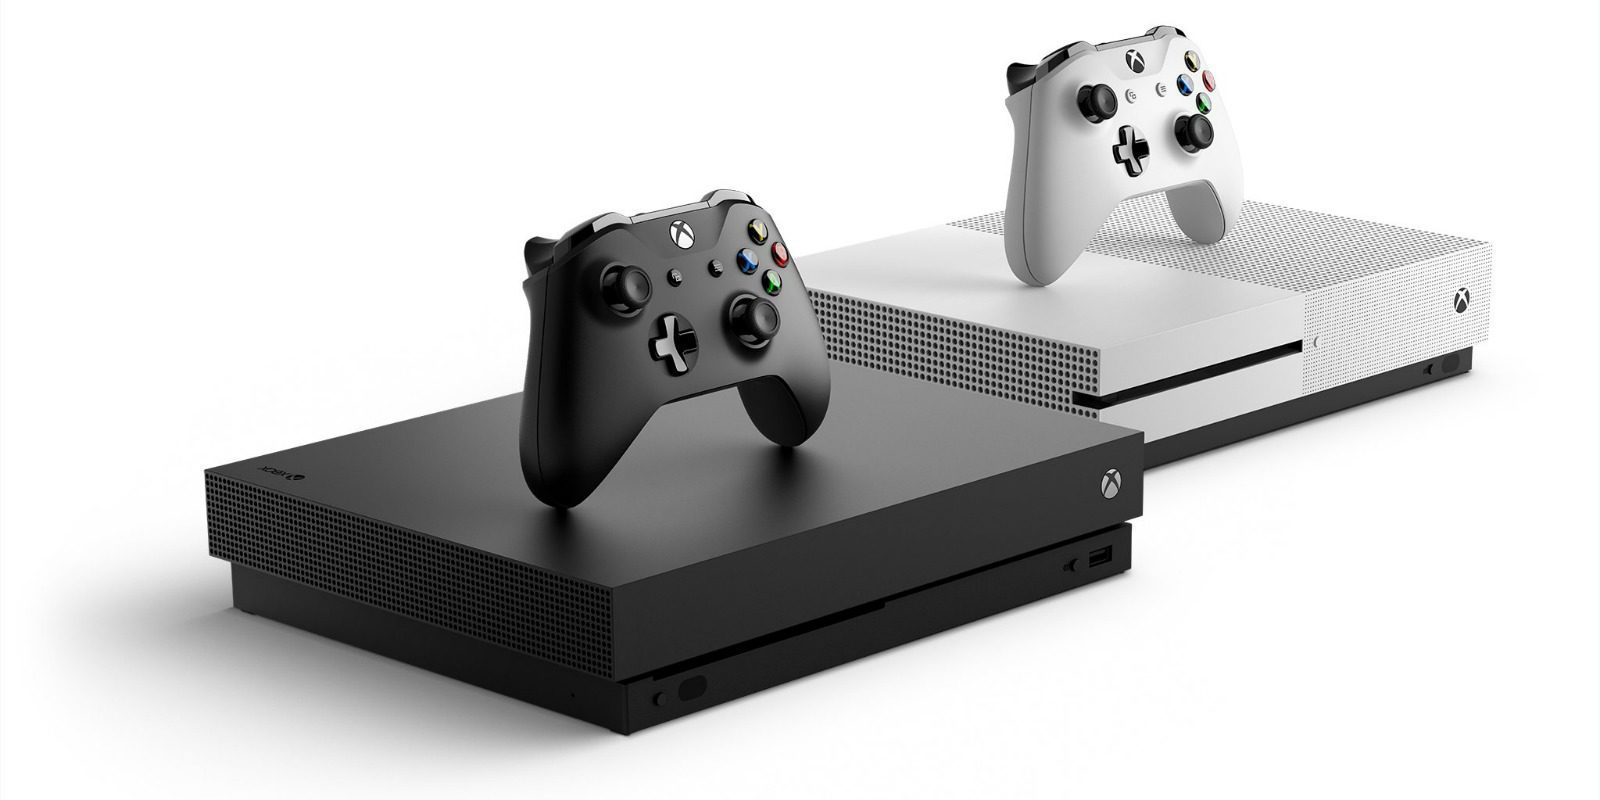 Los regalos digitales y la lista de deseados llegarán pronto a Windows 10 y Xbox One